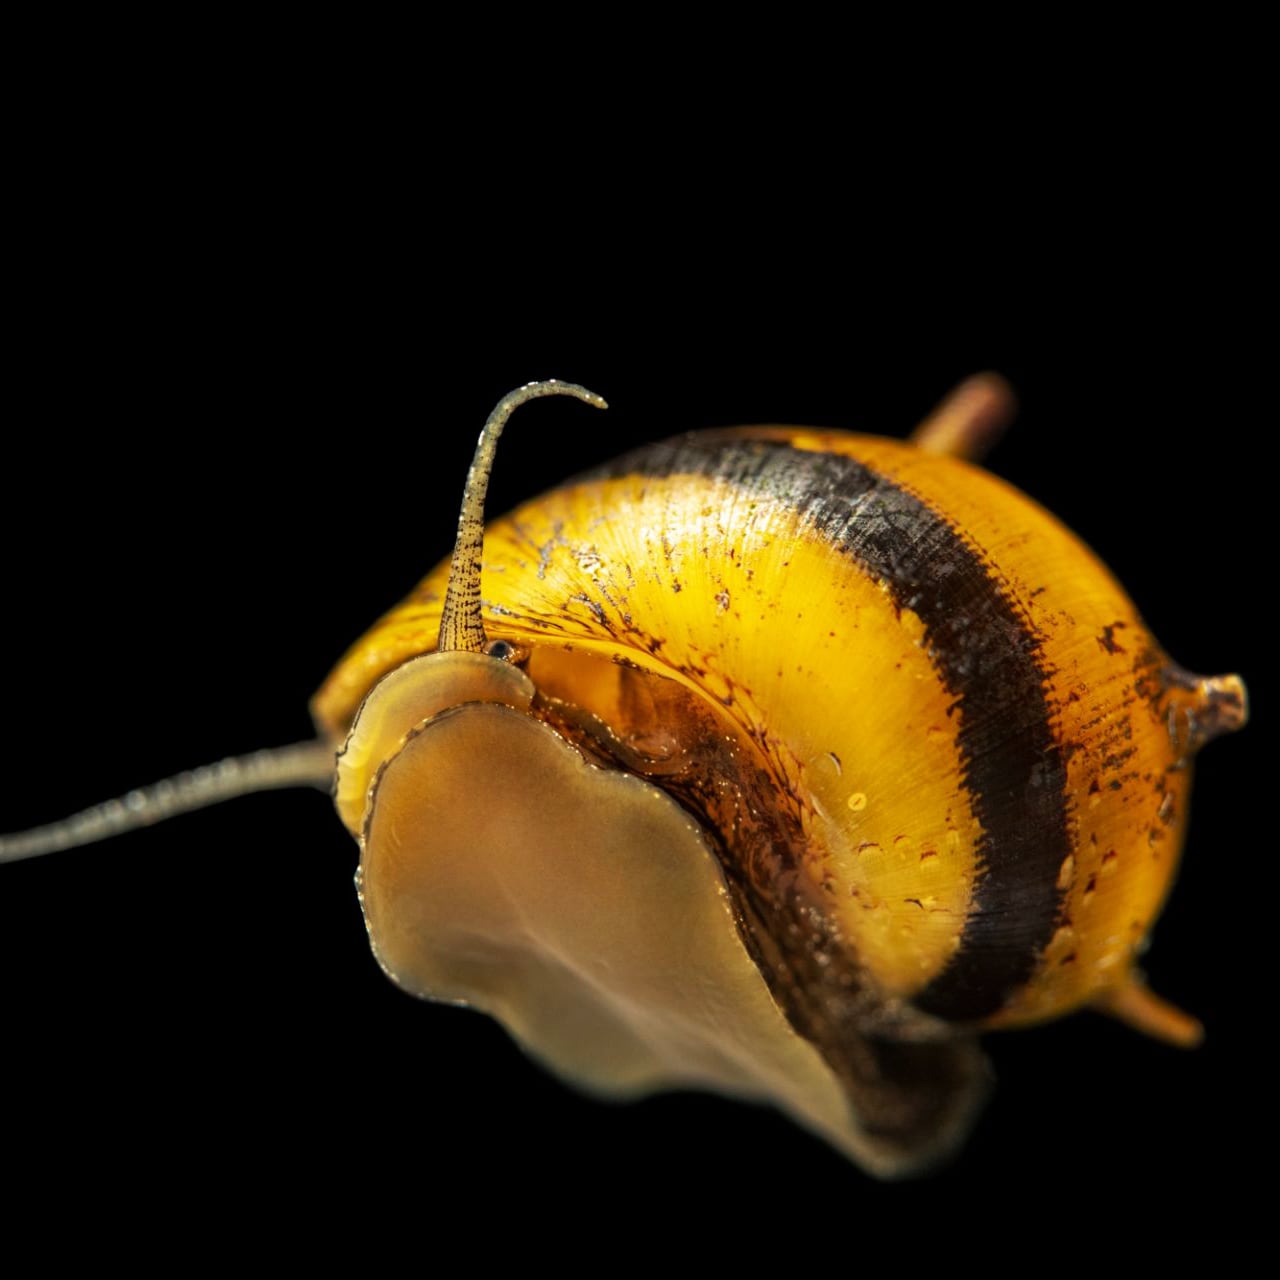 Horned Nerite snail (Clithon corona/diadema)